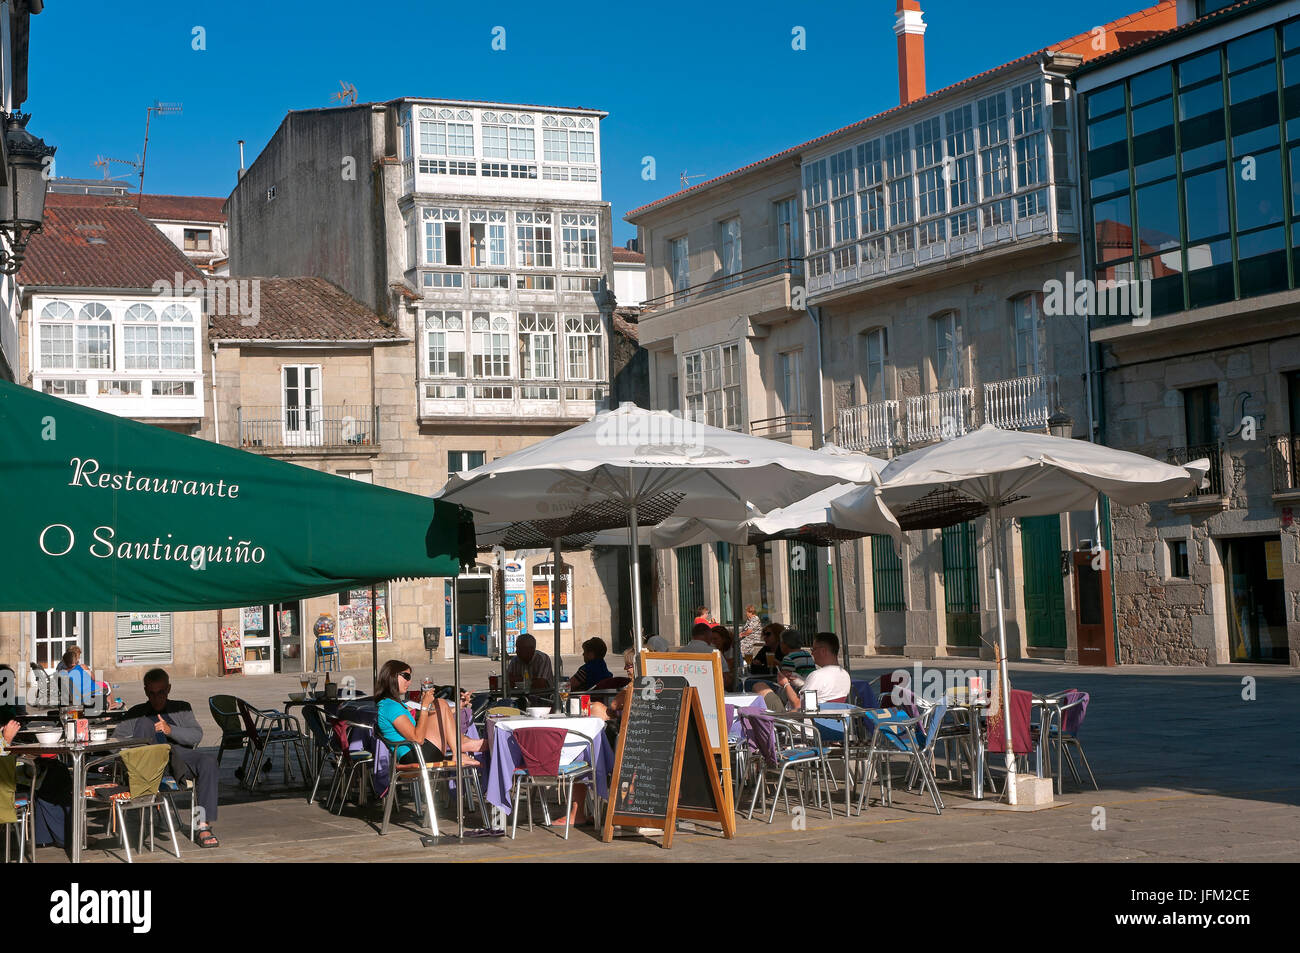 Bar terrasse sur la Plaza de Macias, Padron, province de La Corogne, une région de Galice, Espagne, Europe Banque D'Images